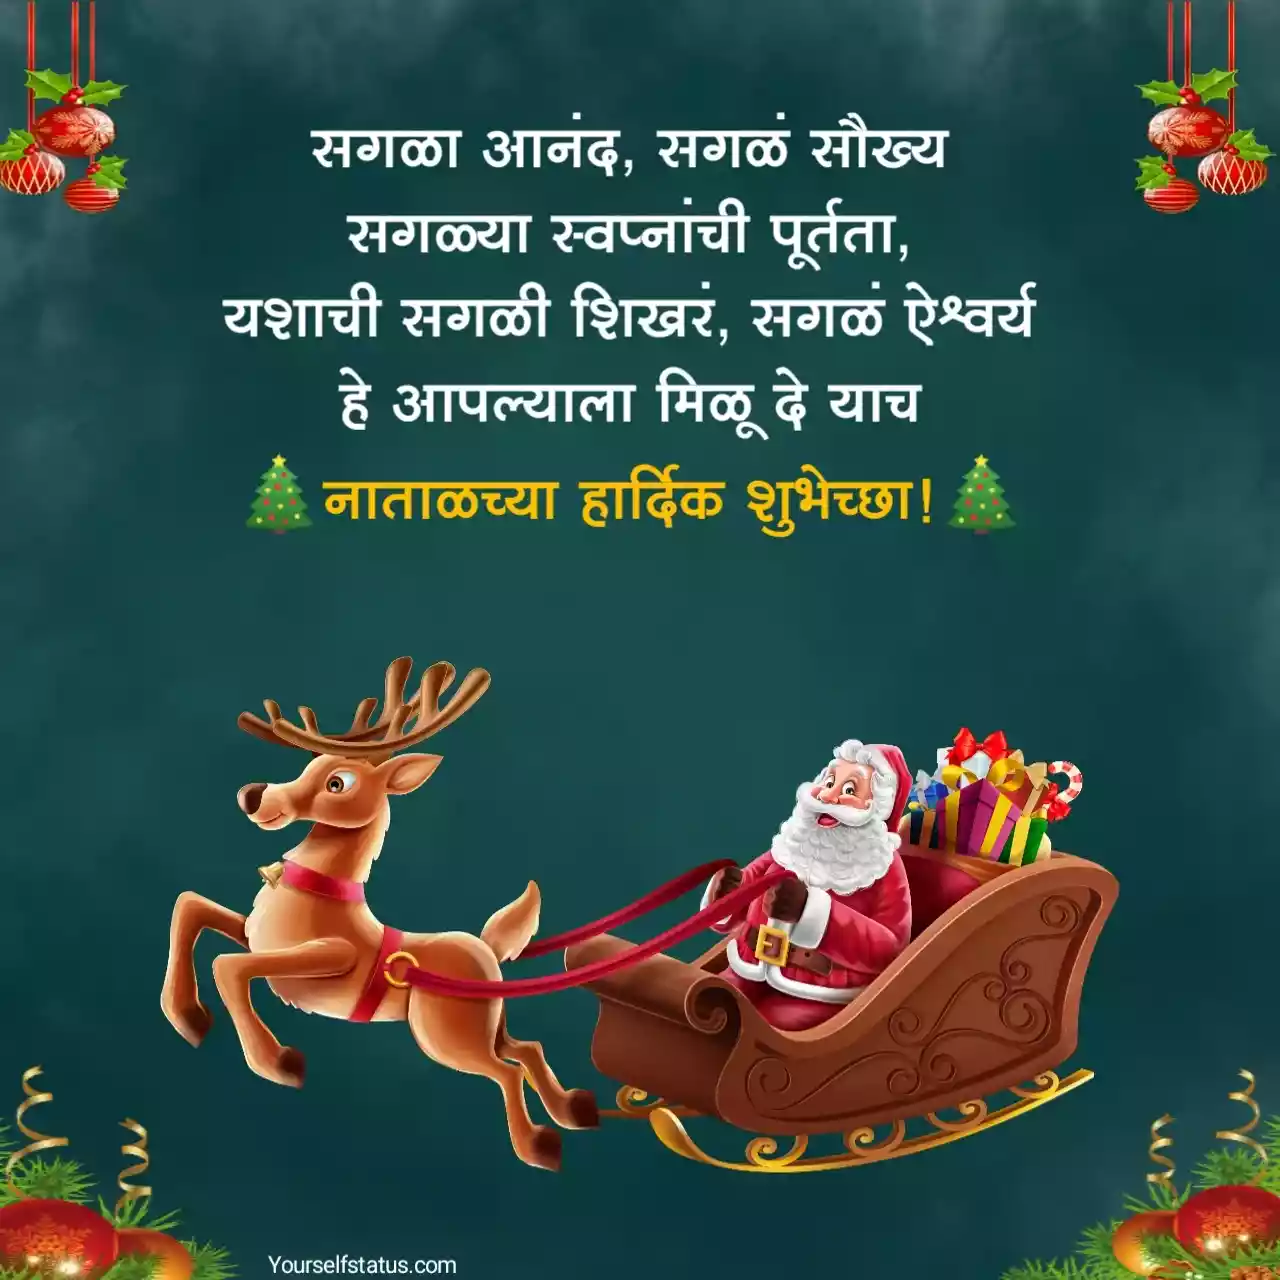 Christmas whatsapp status in marathi